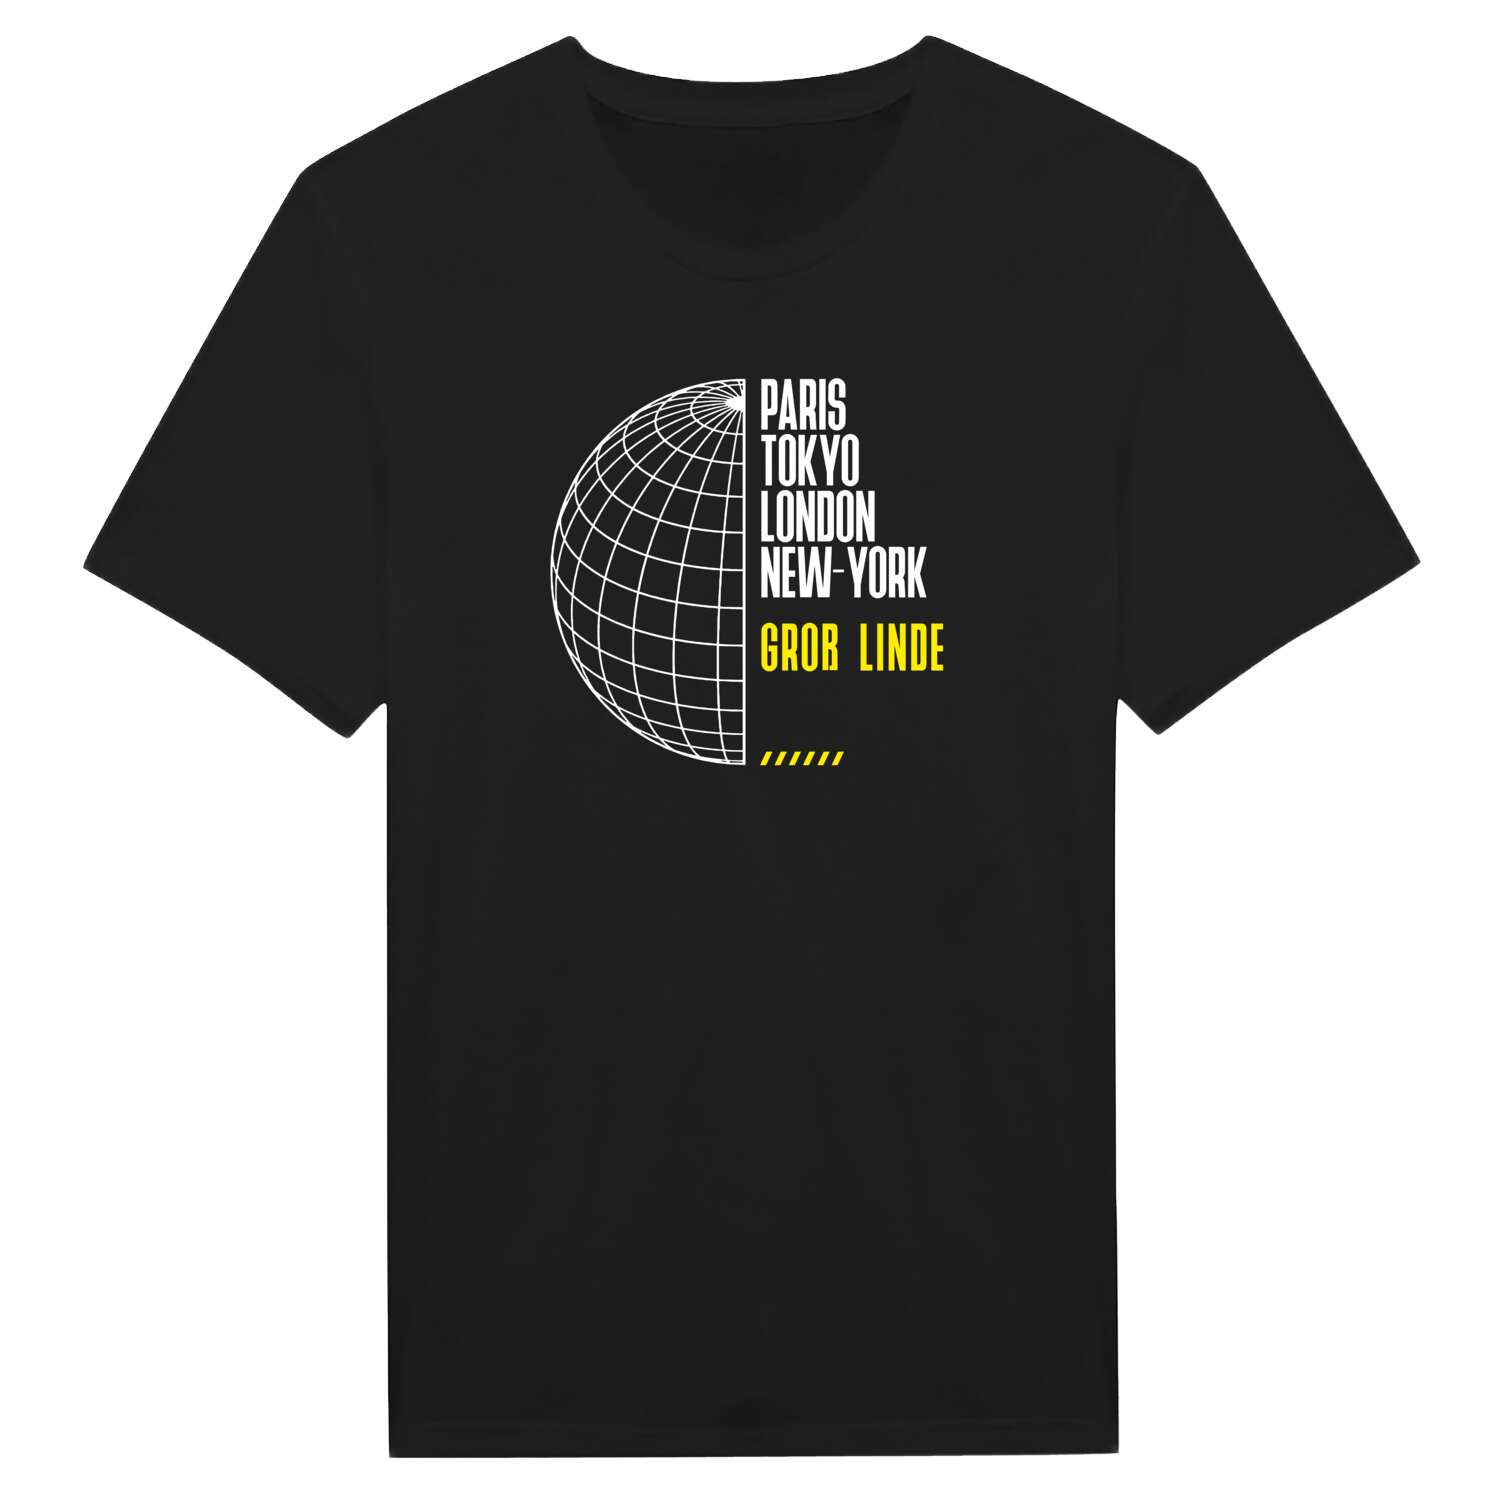 Groß Linde T-Shirt »Paris Tokyo London«